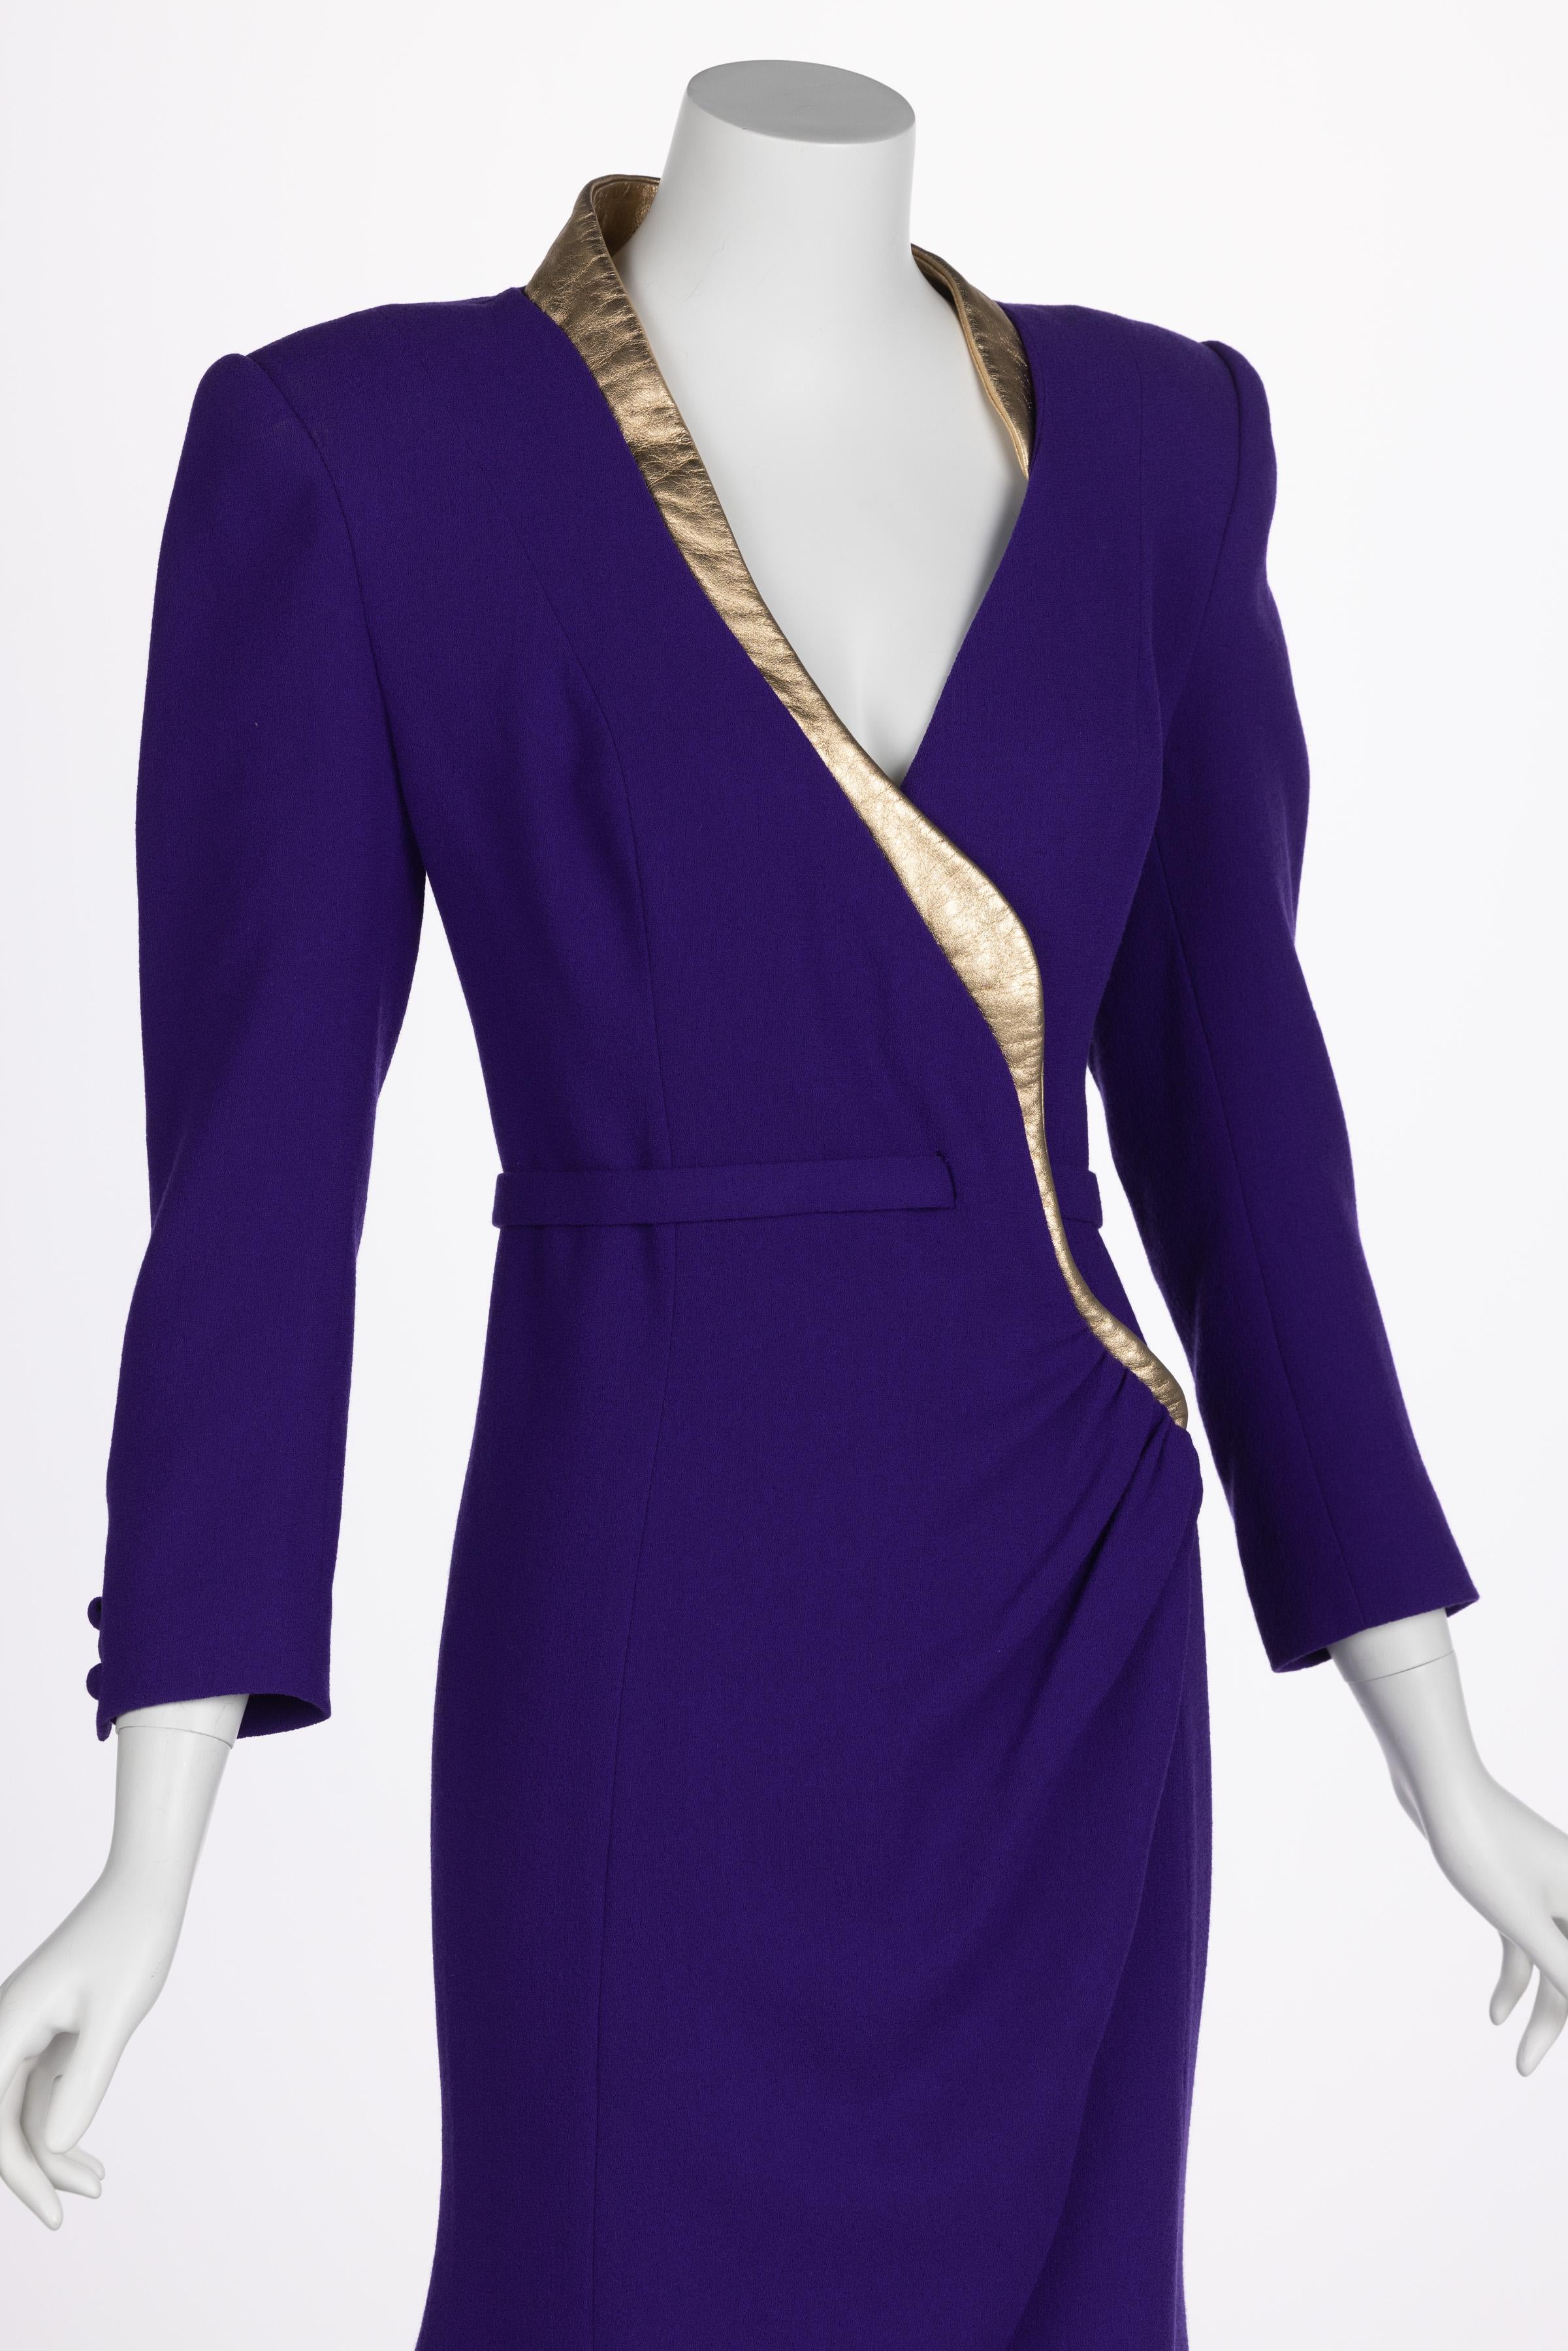 Ronald Van der kemp Haute Couture Dress, 2018 For Sale 5